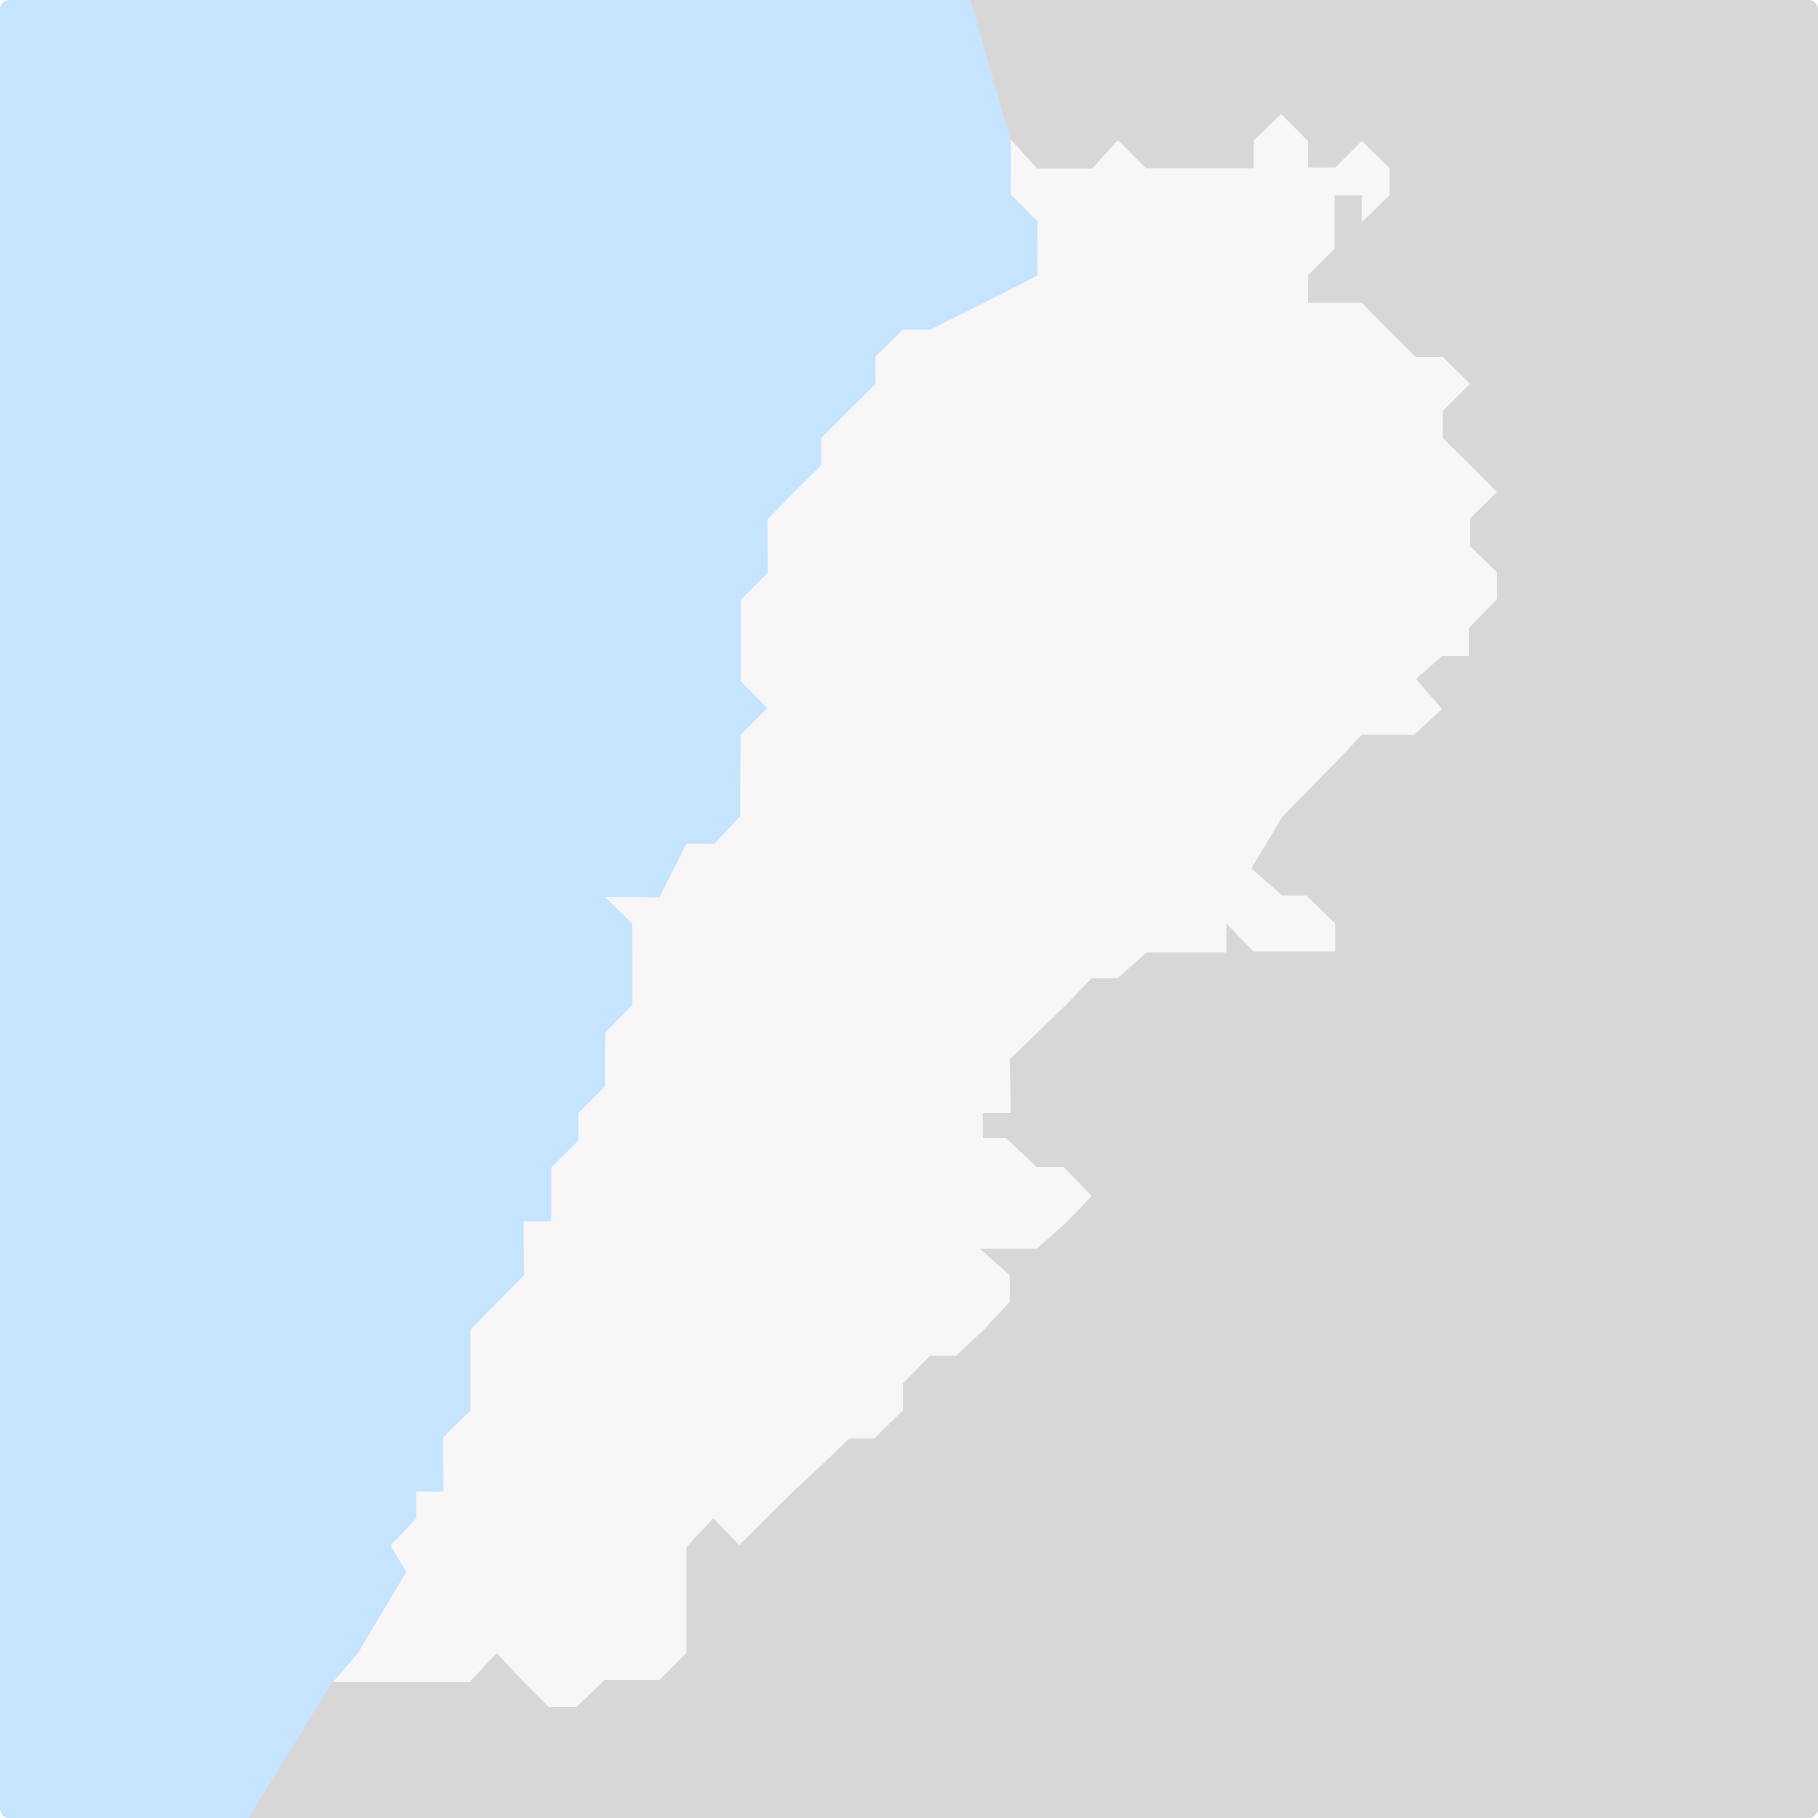 Le Liban